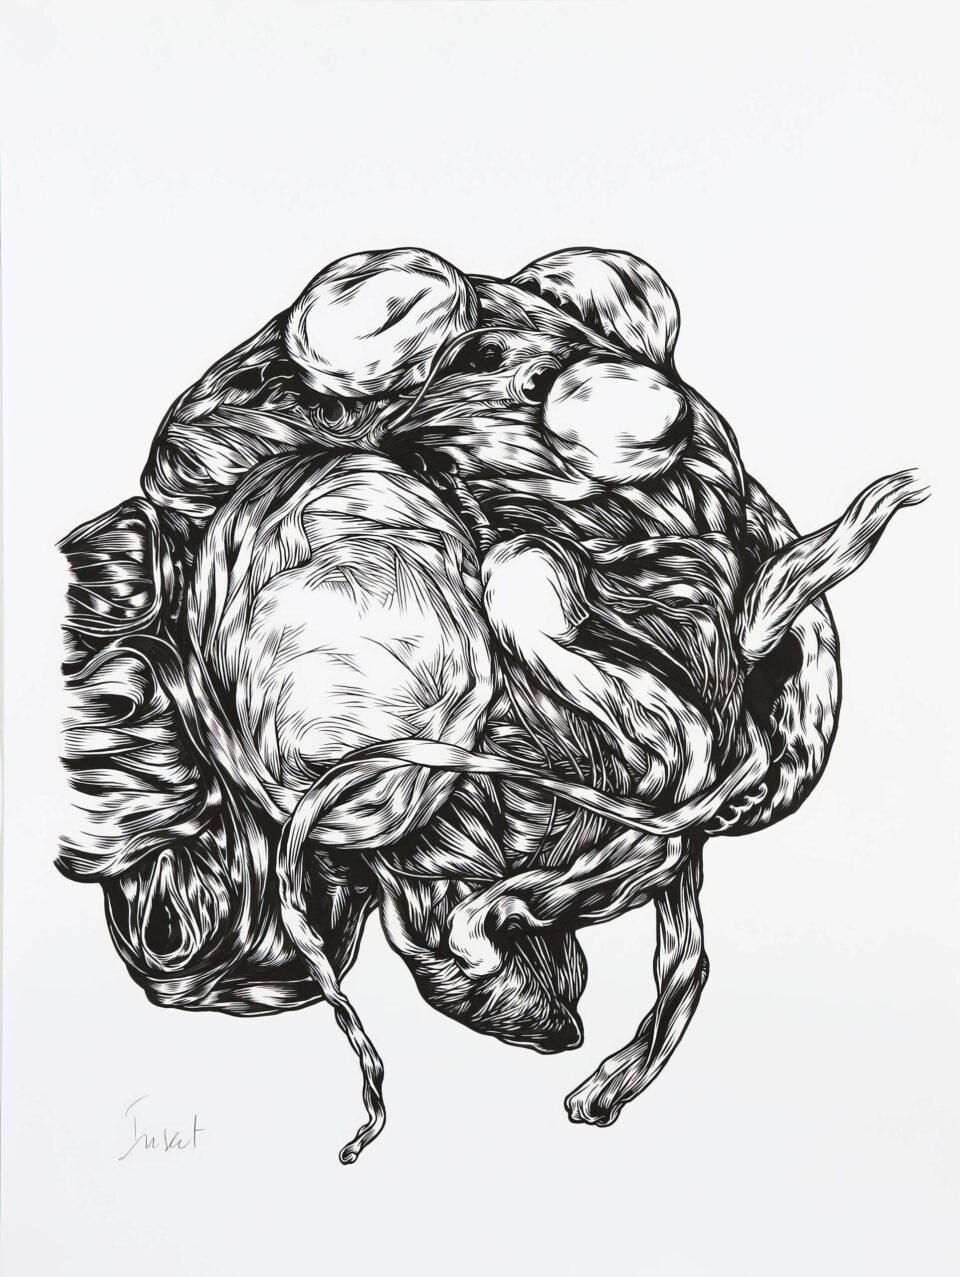 Insect, encre de chine sur papier, 60×80 cm, 2016